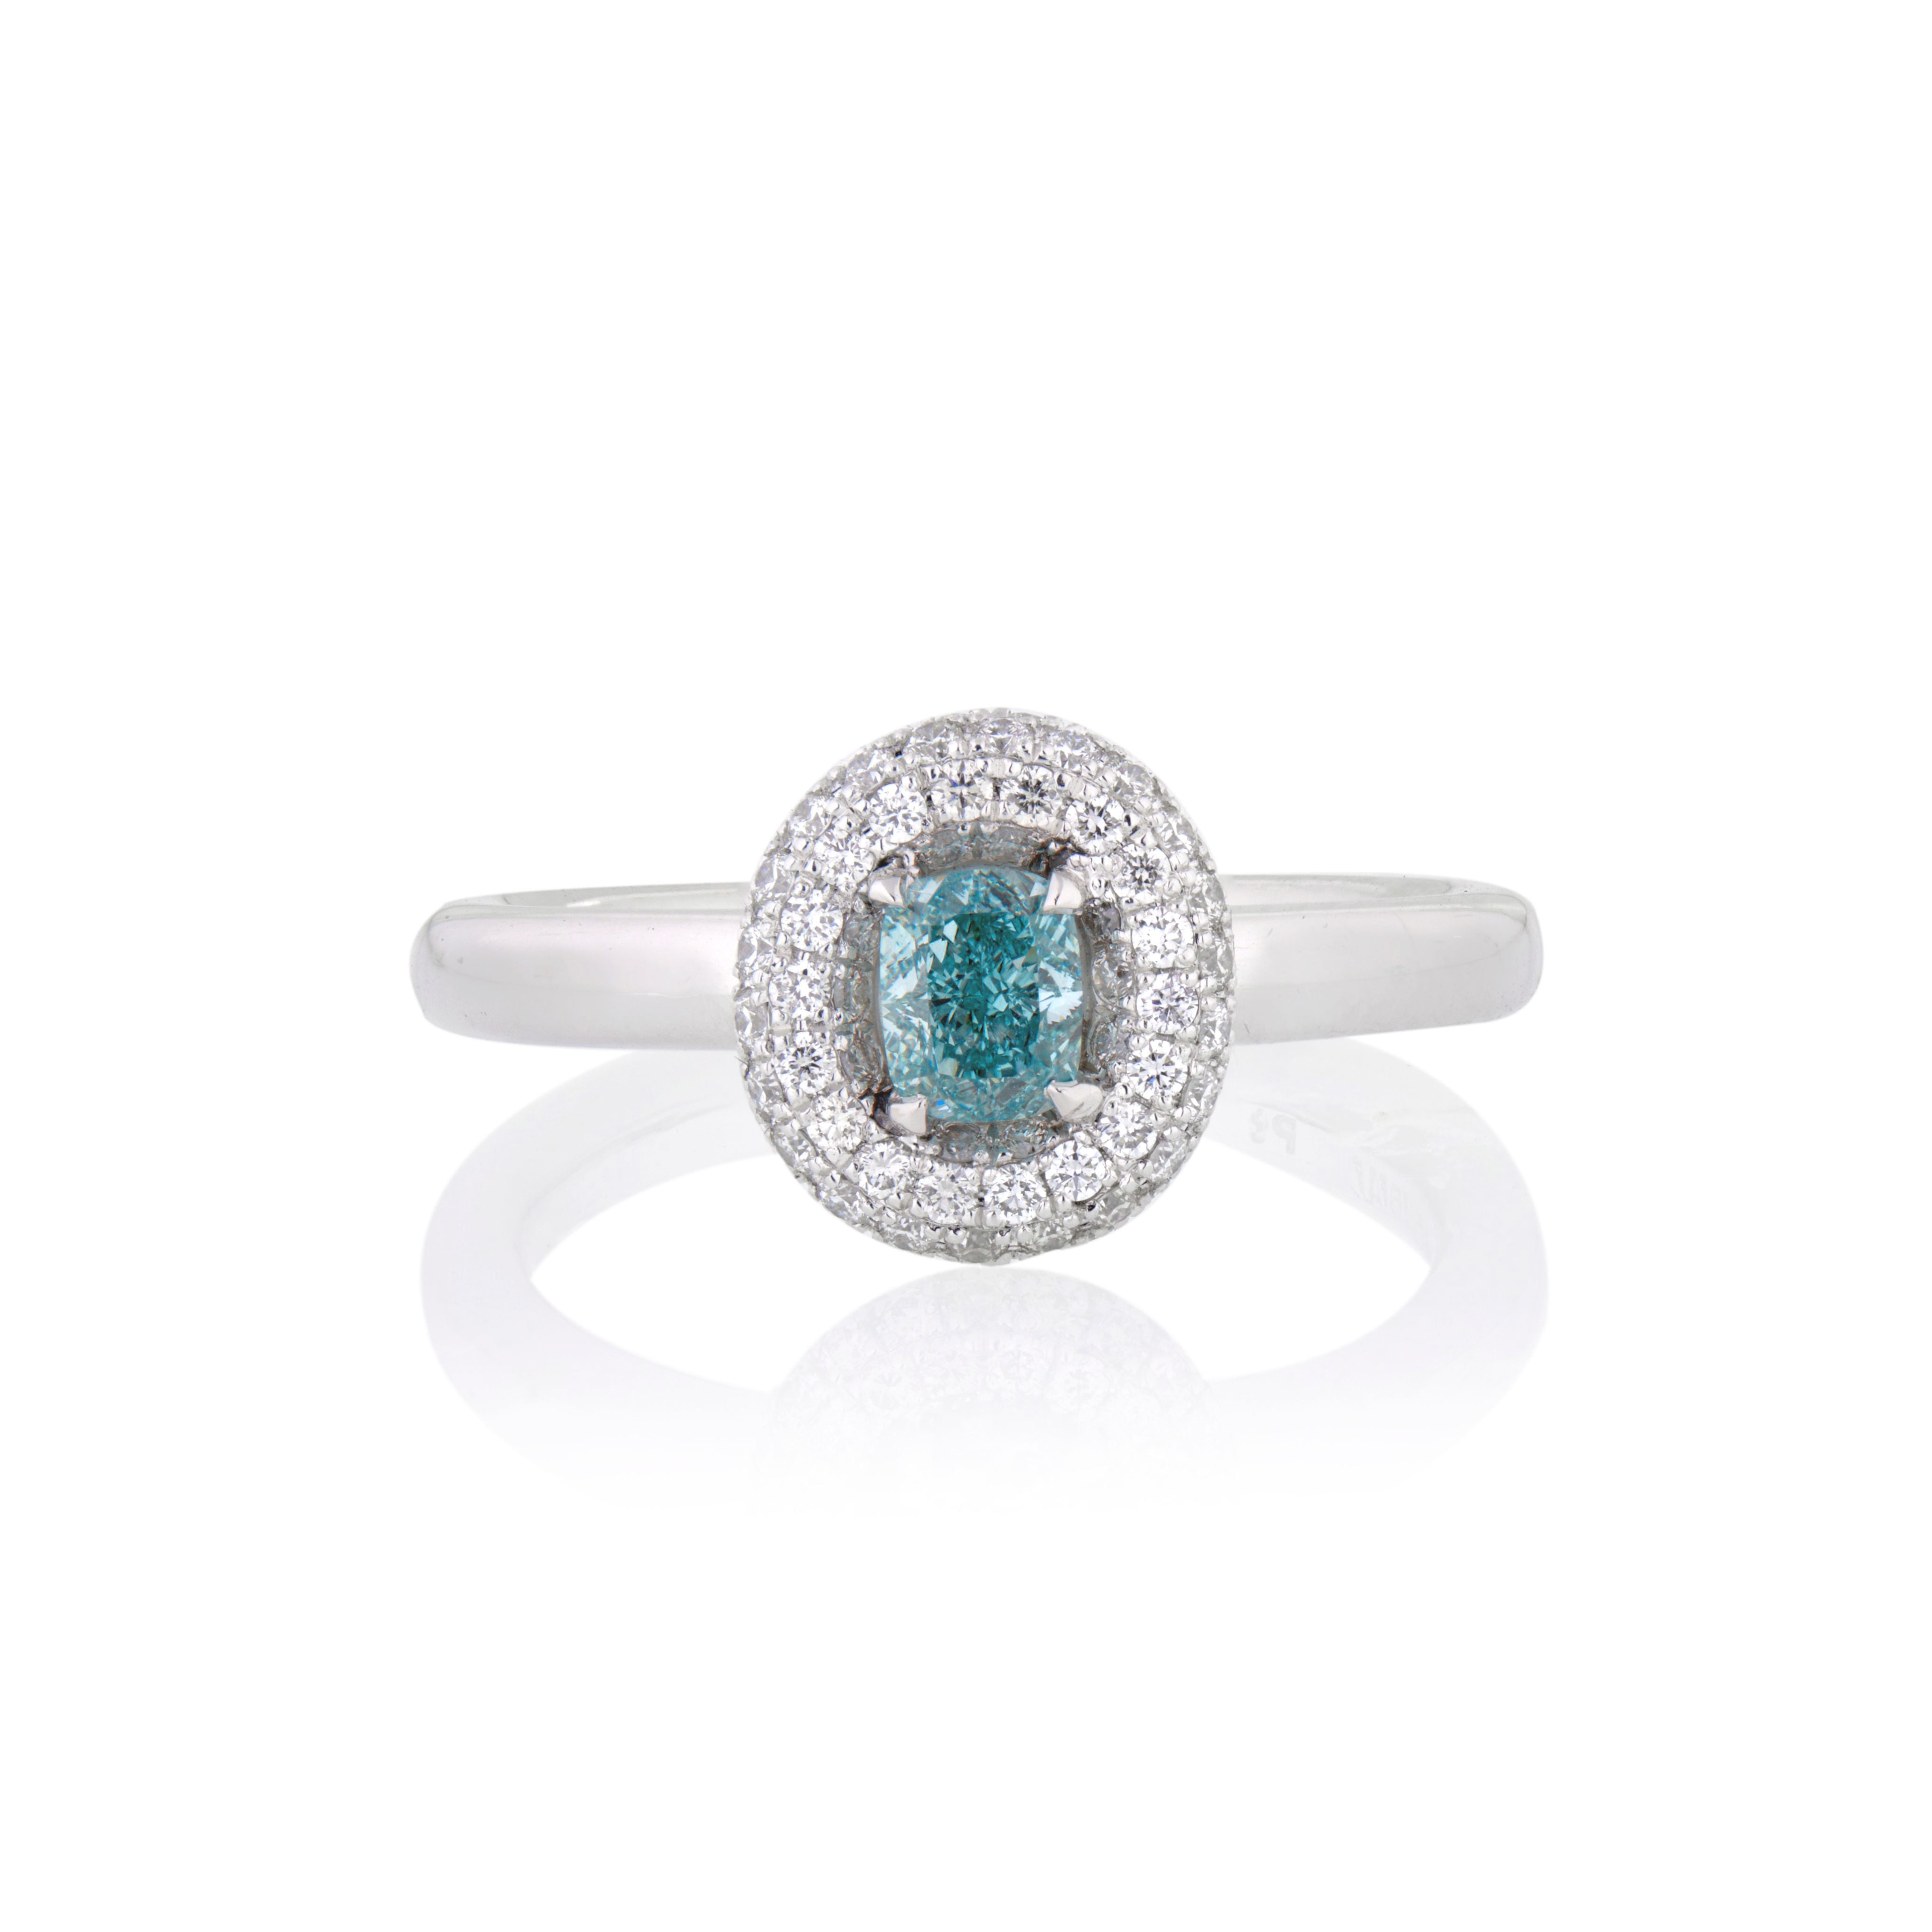 Exquisite handmade platinum Belle Epoque diamond ring